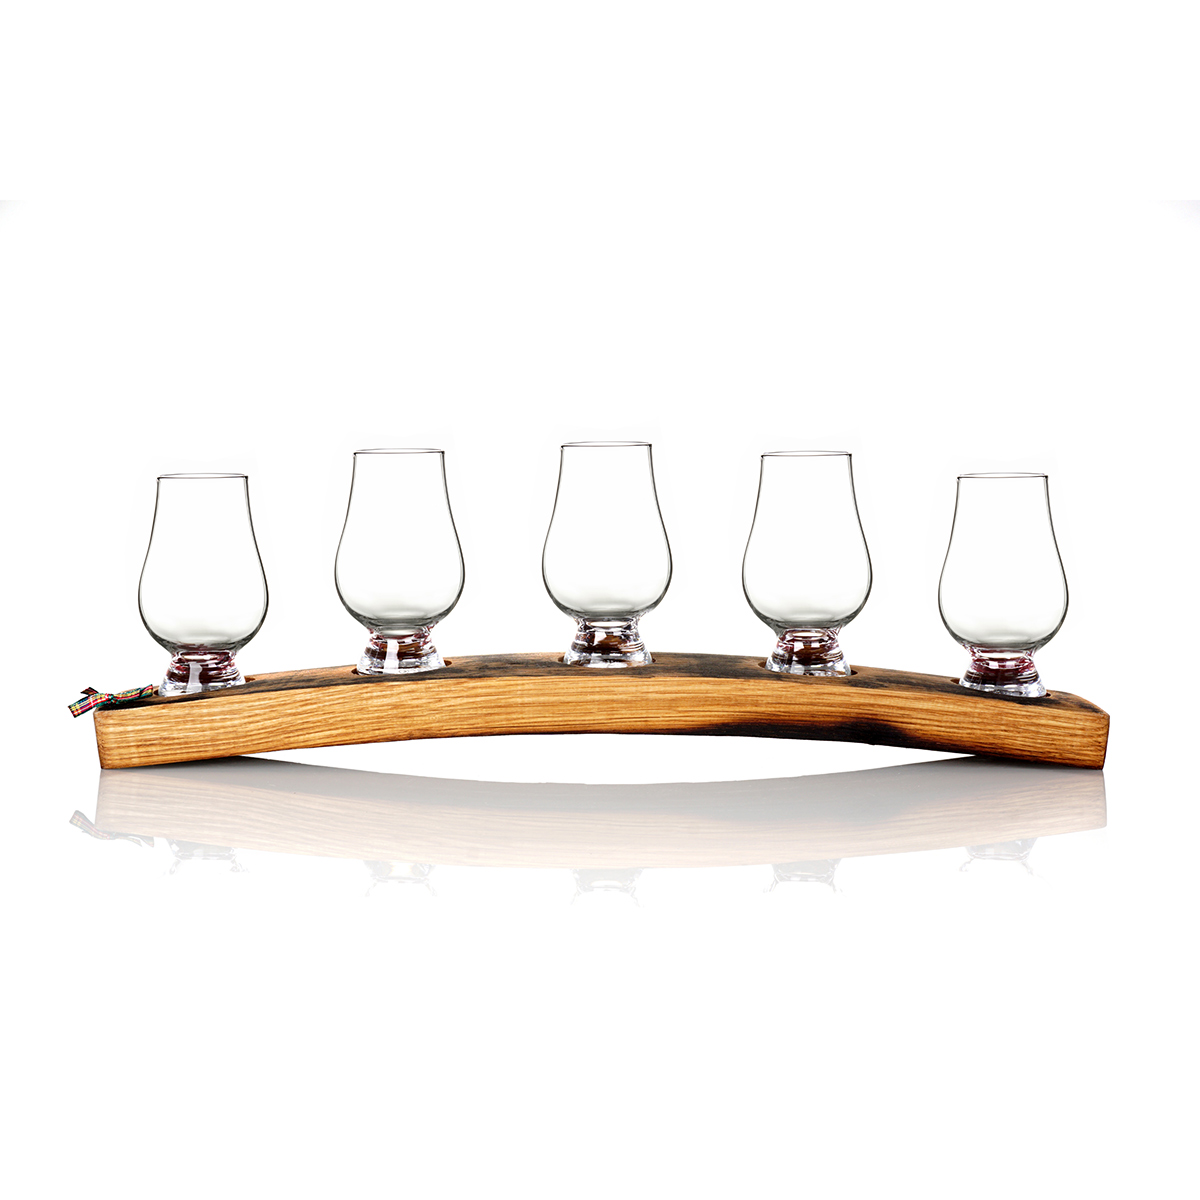 Whisky Fass Tasting Tray / Barrel Plinth aus Eiche mit 5 Gencairn Gläsern